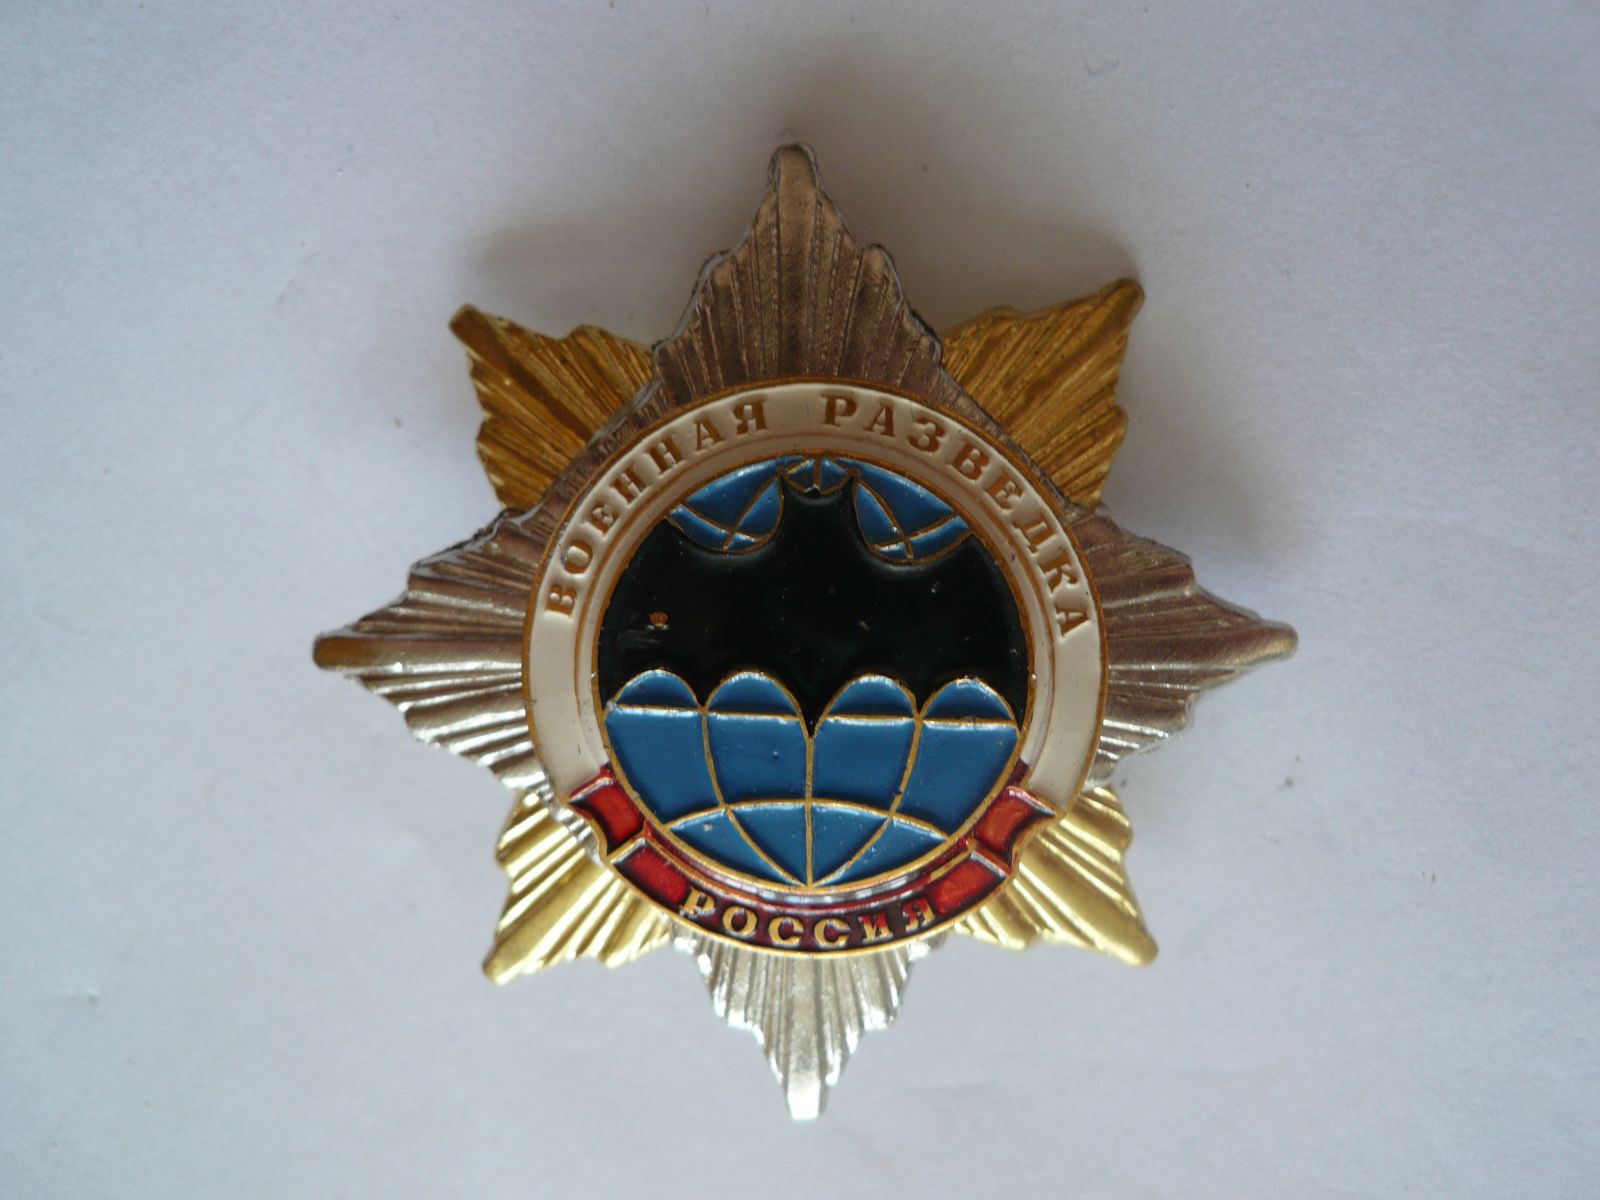 Záslužná hvězda - průzkumní jednotky, Rusko